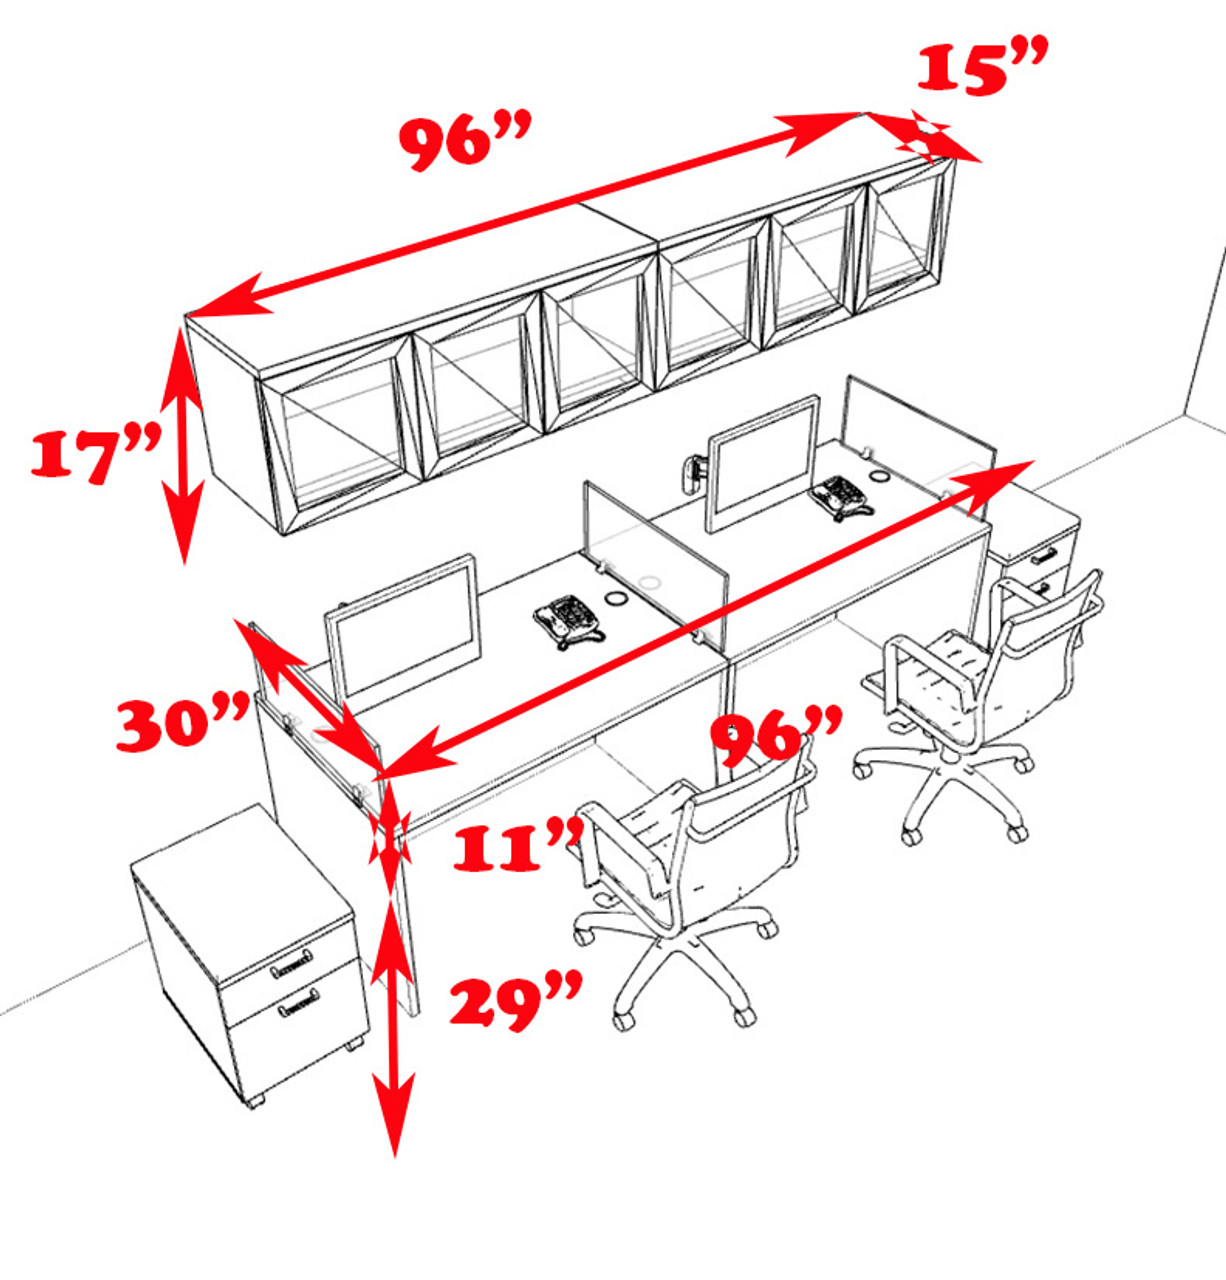 Two Person Modern Divider Office Workstation Desk Set, #CH-AMB-SP101